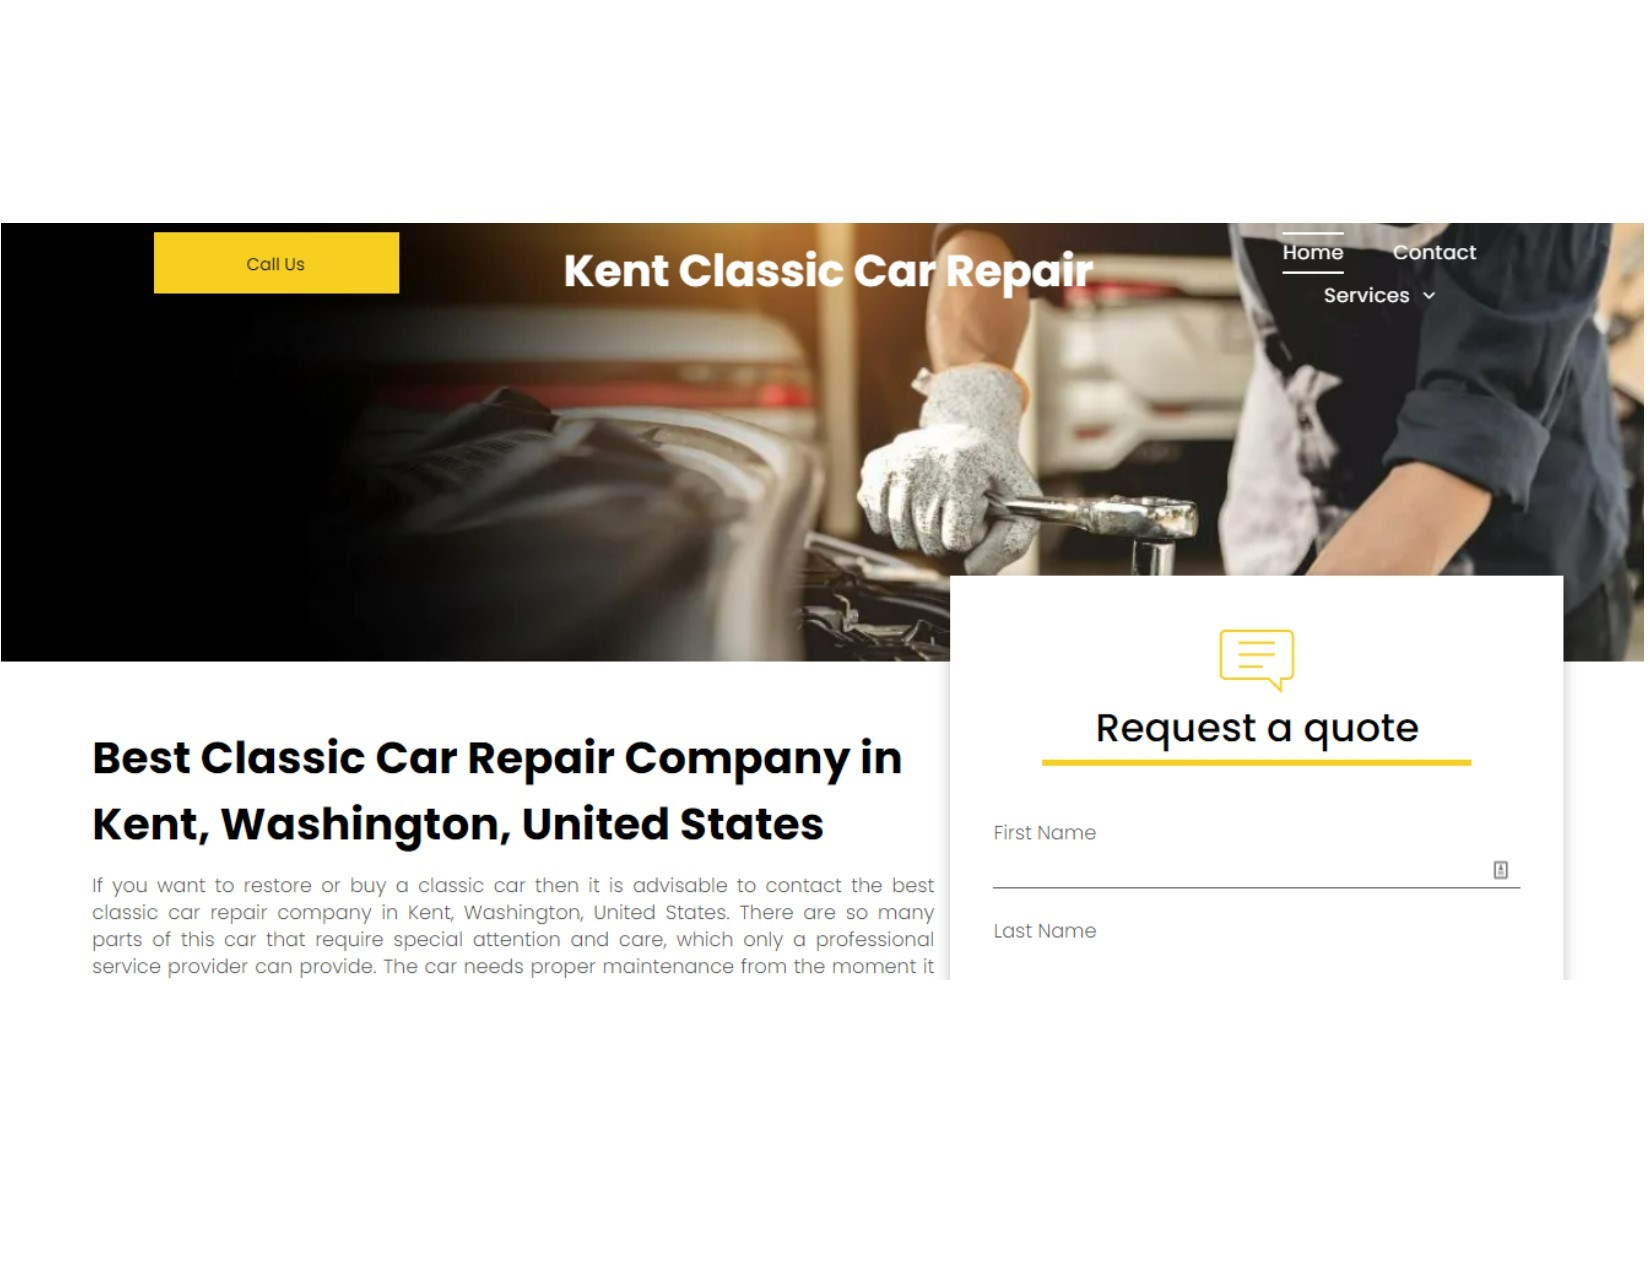 Kent Classic Car Repair